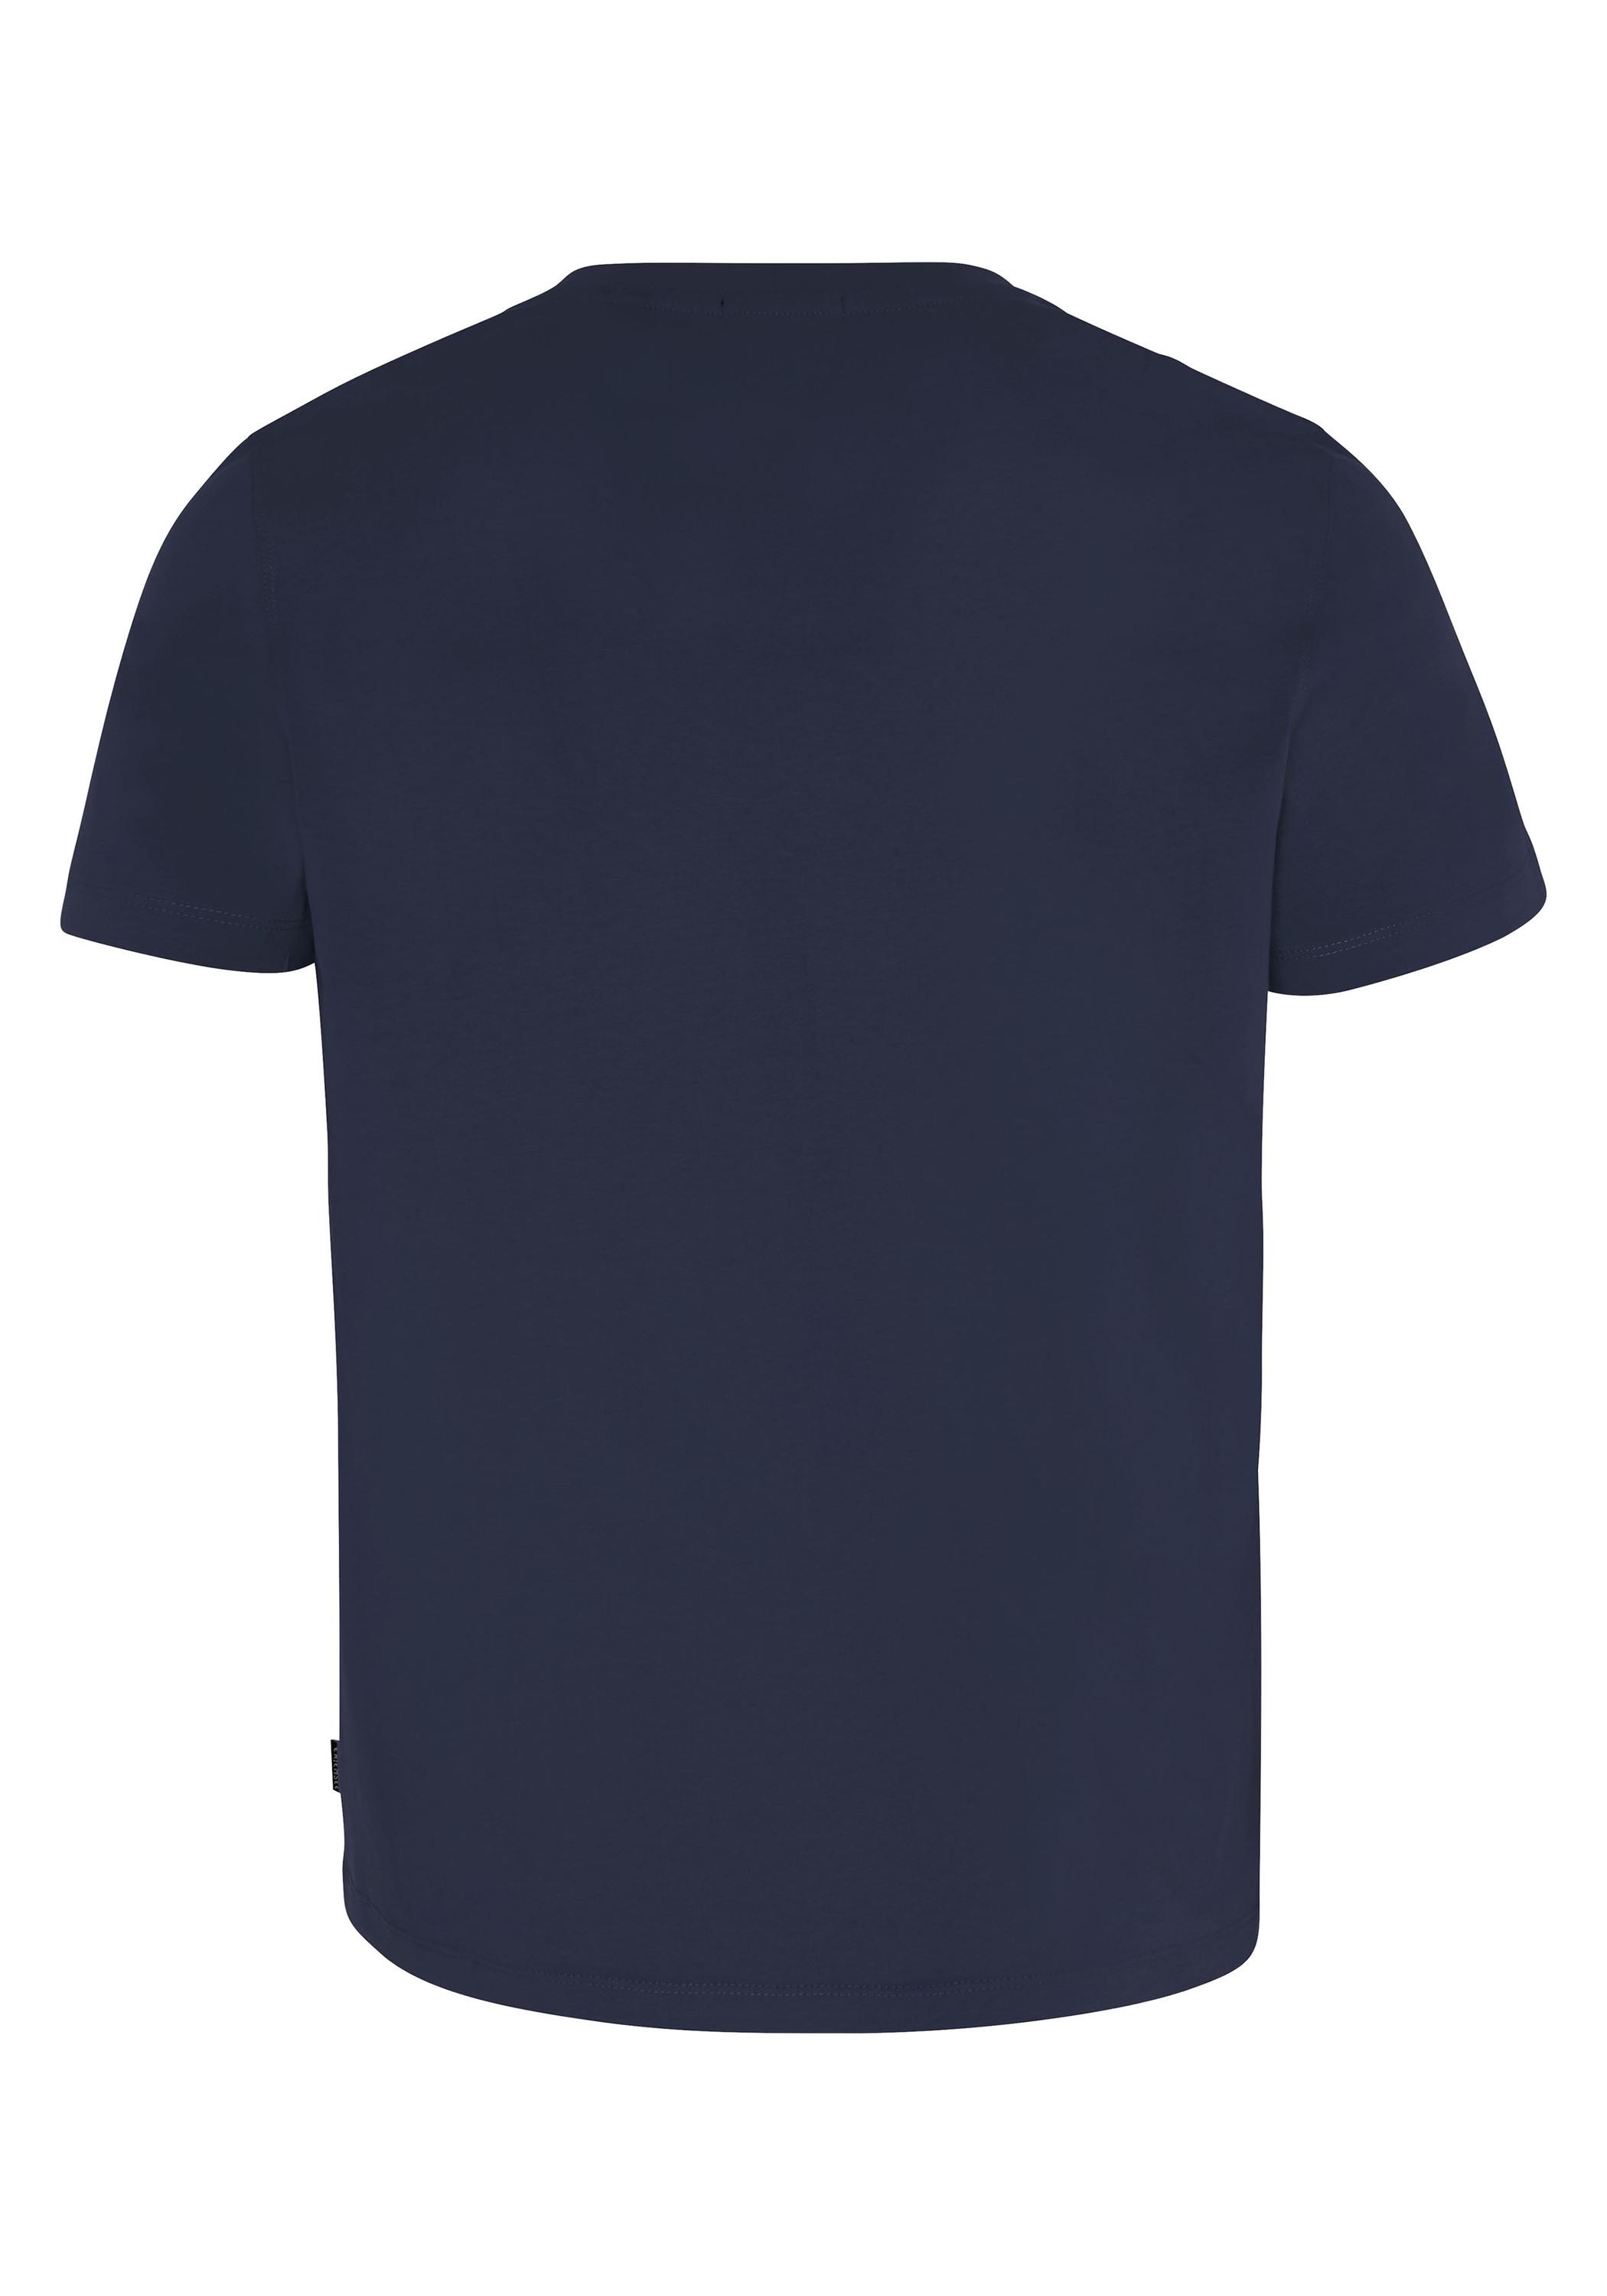 Blue/Wht kaufen im SportScheck von T-Shirt Online Dk T-Shirt Shop Dif Herren Chiemsee